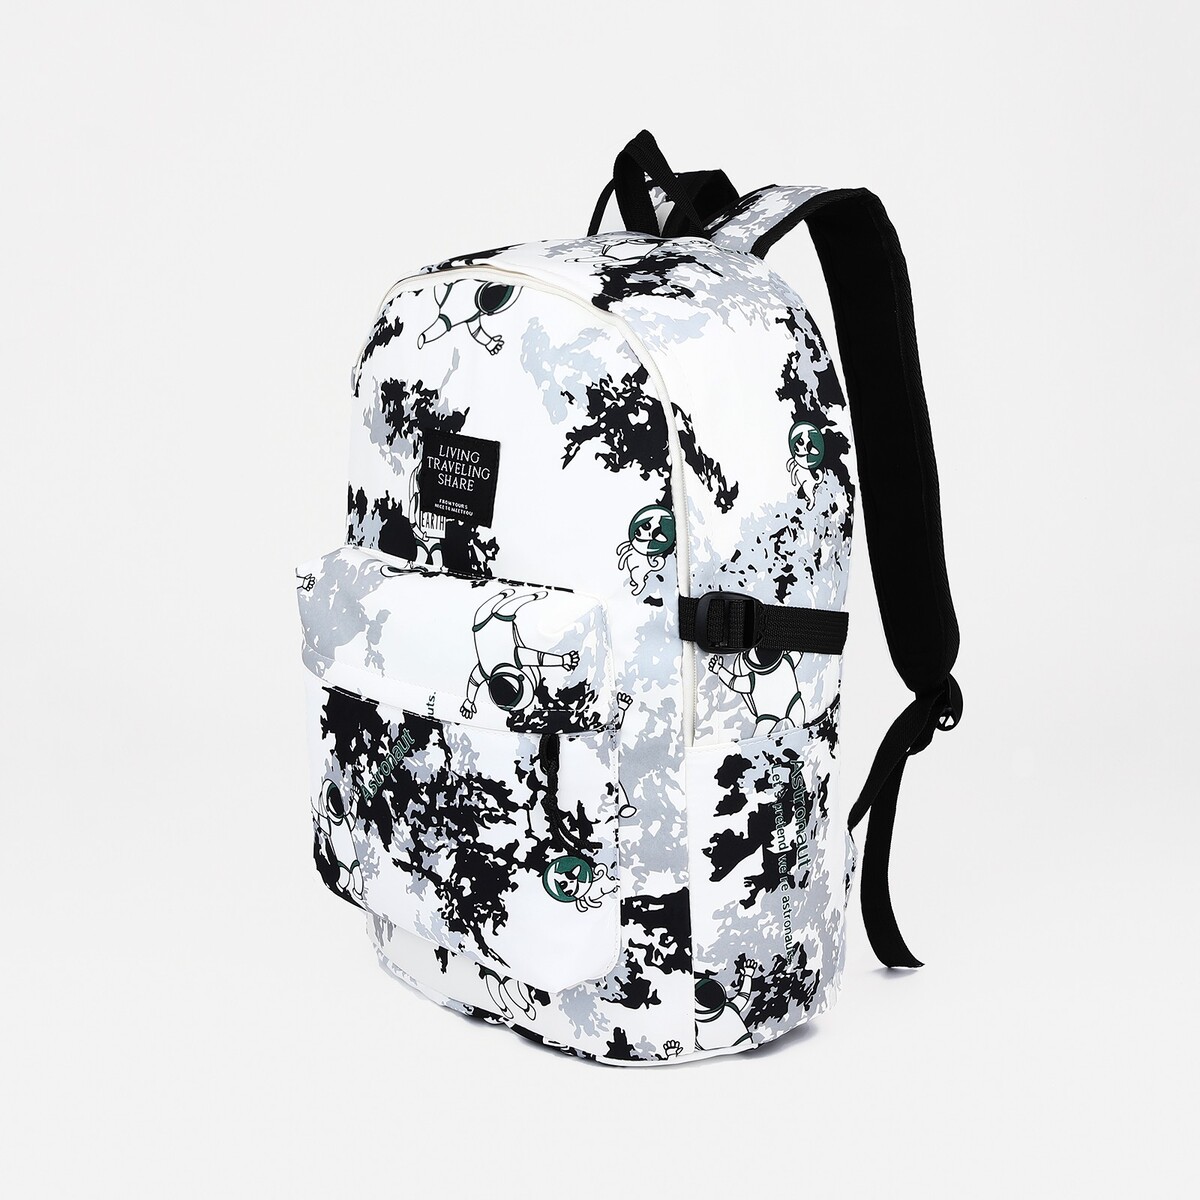 Рюкзак школьный из текстиля, 3 кармана, цвет белый/серый рюкзак сумка из текстиля на молнии 3 кармана отдел для ноутбука серый